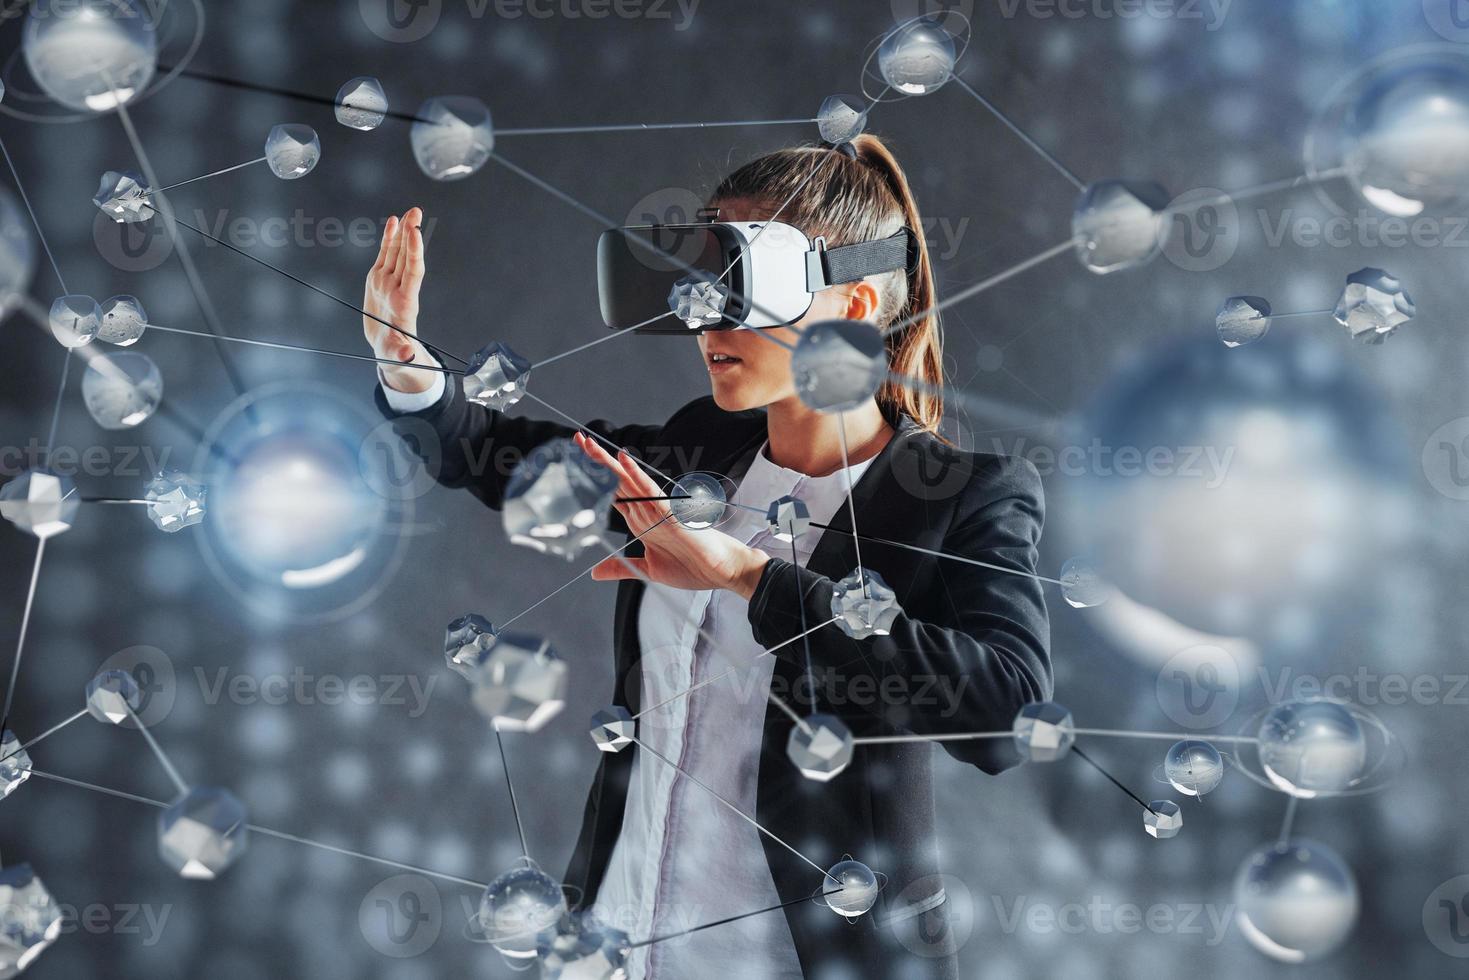 Virtuelle Realität, 3D-Technologien, Cyberspace, Wissenschaft und Menschenkonzept - glückliche Frau in 3D-Brille, die Projektionsmoleküle berührt. foto